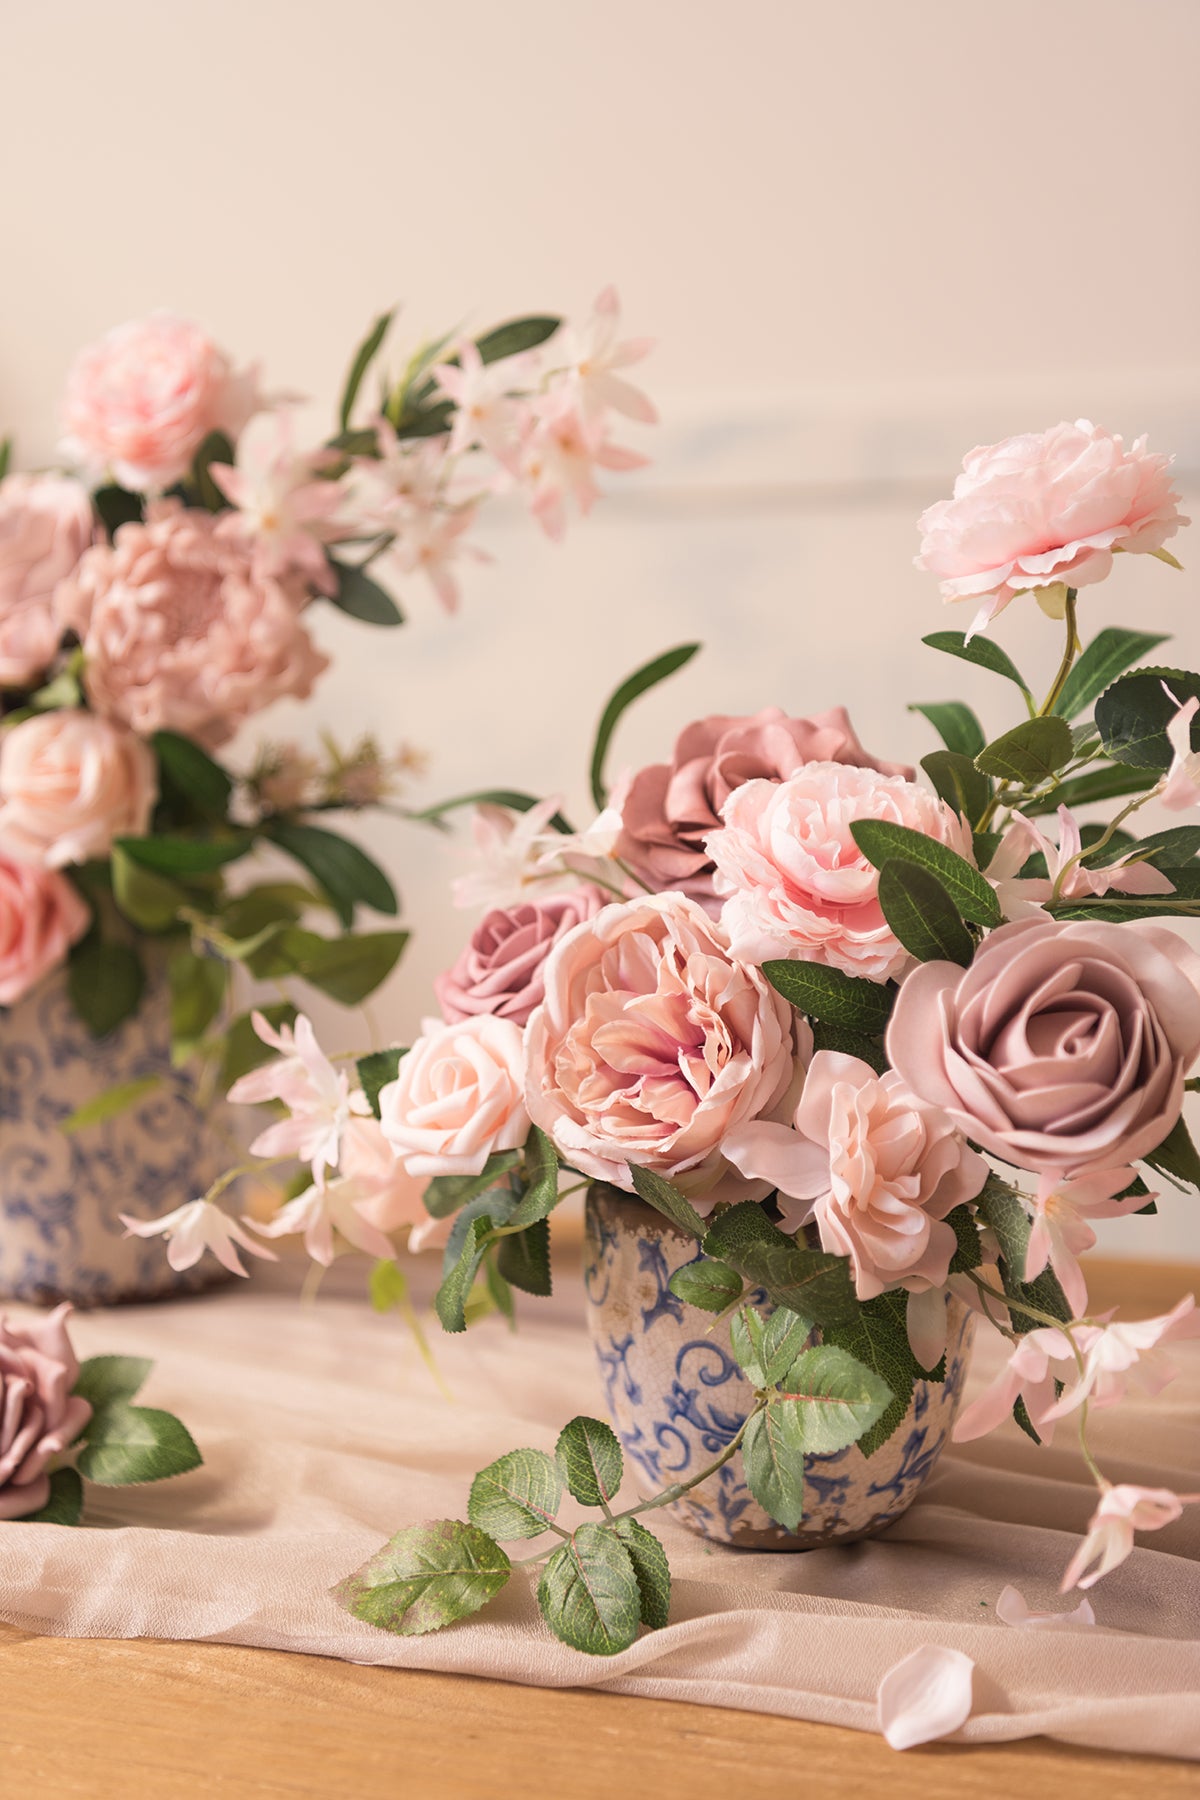 Louis Vuitton Silk Floral Purse Centerpiece – Designs by Ginny